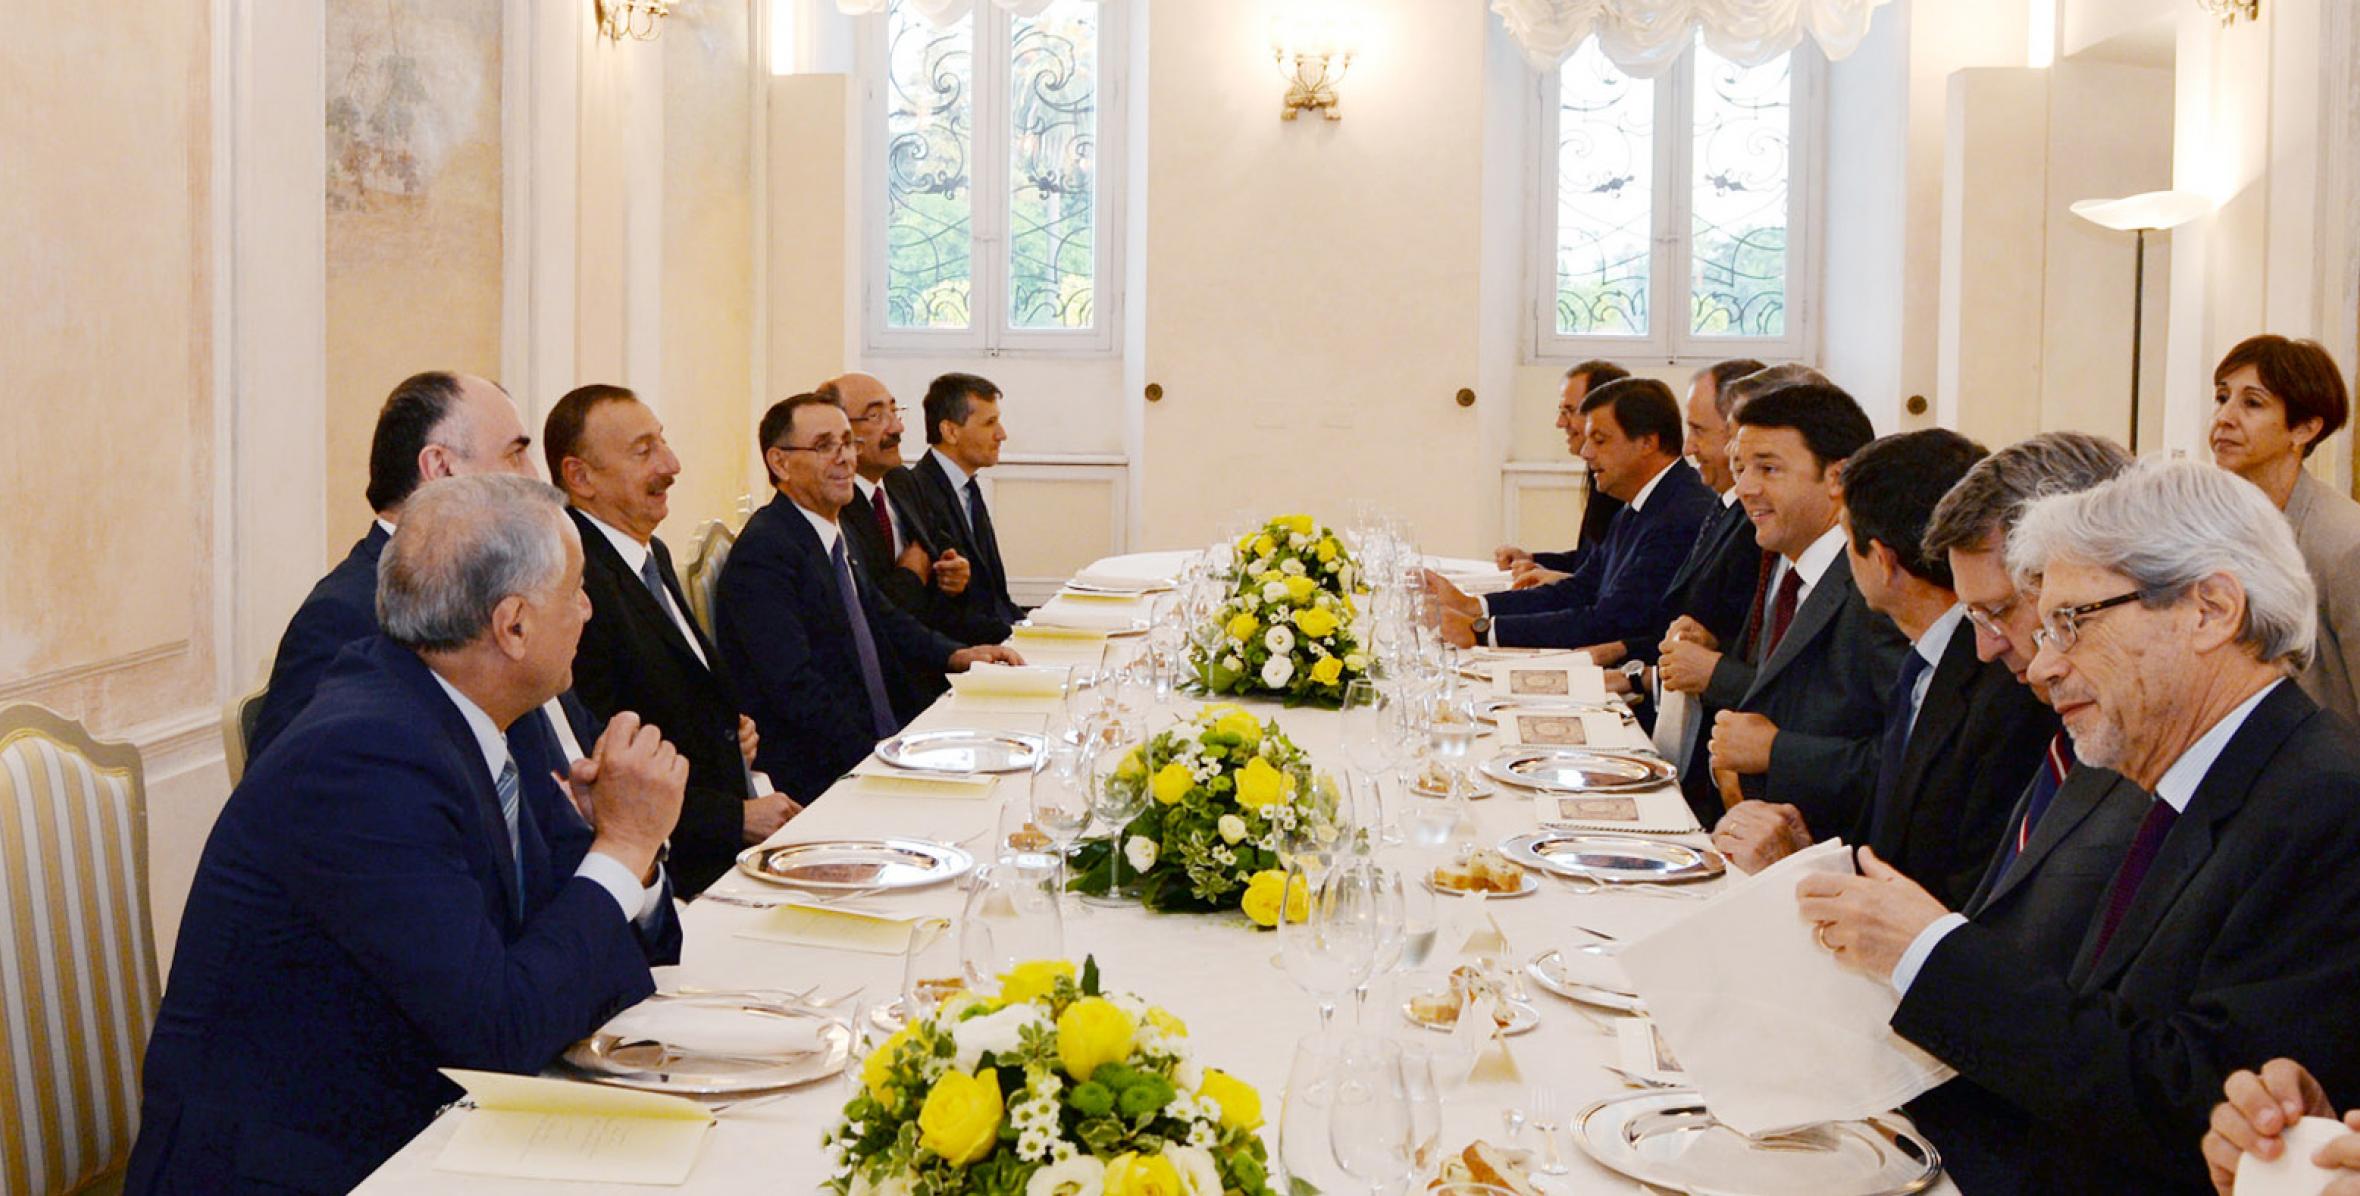 От имени премьер-министра Италии Маттео Ренци дан ужин в честь Ильхама Алиева